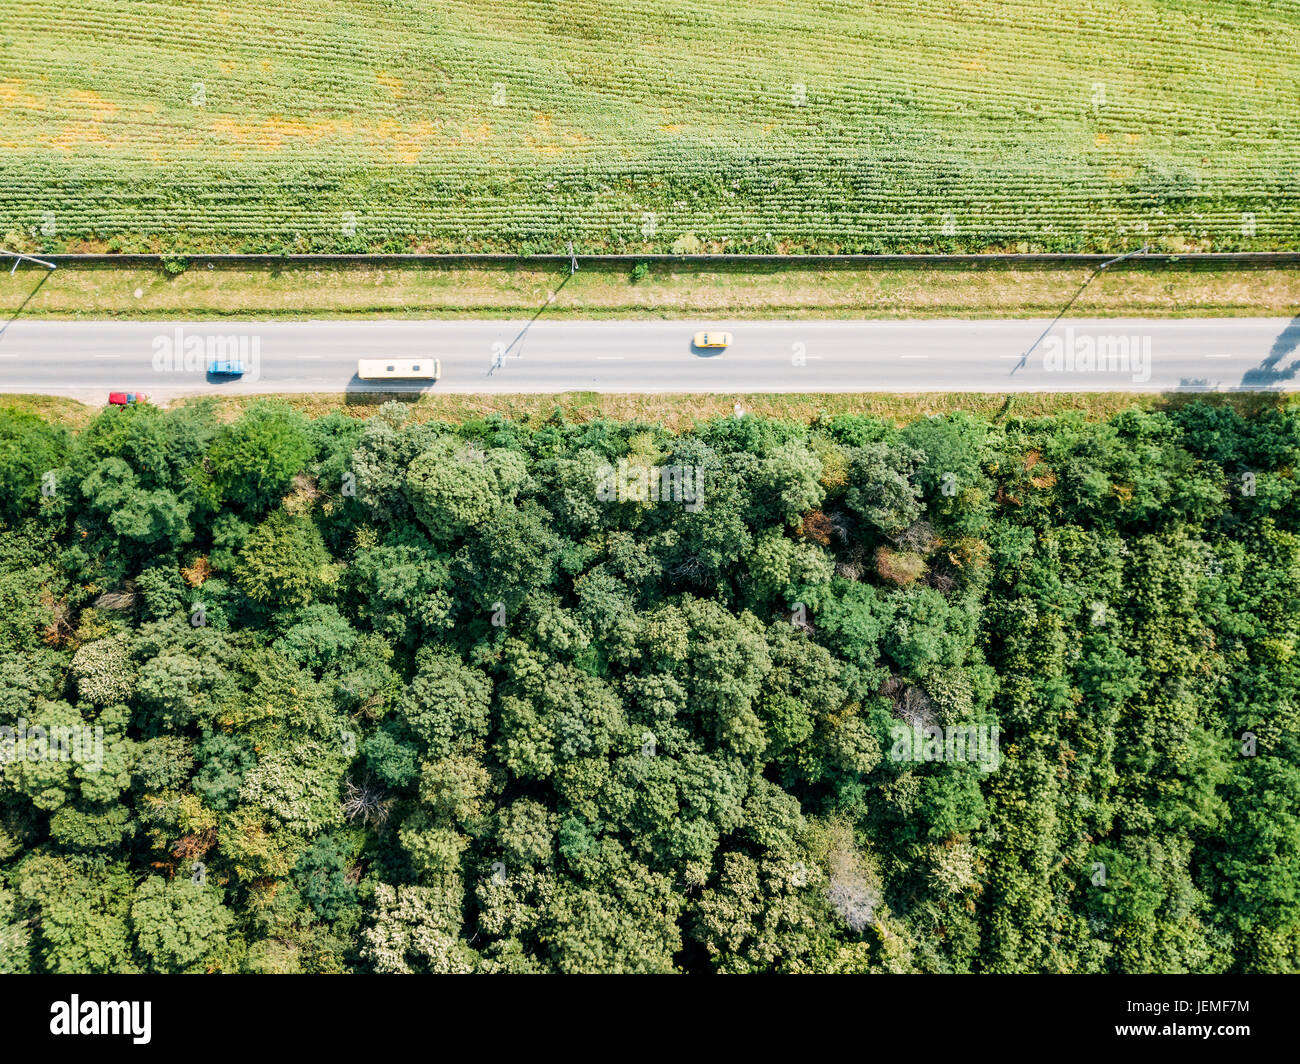 Antena Drone Vista de mover los coches en Country Road con bosques y agricultura campo de cultivo en los lados Foto de stock